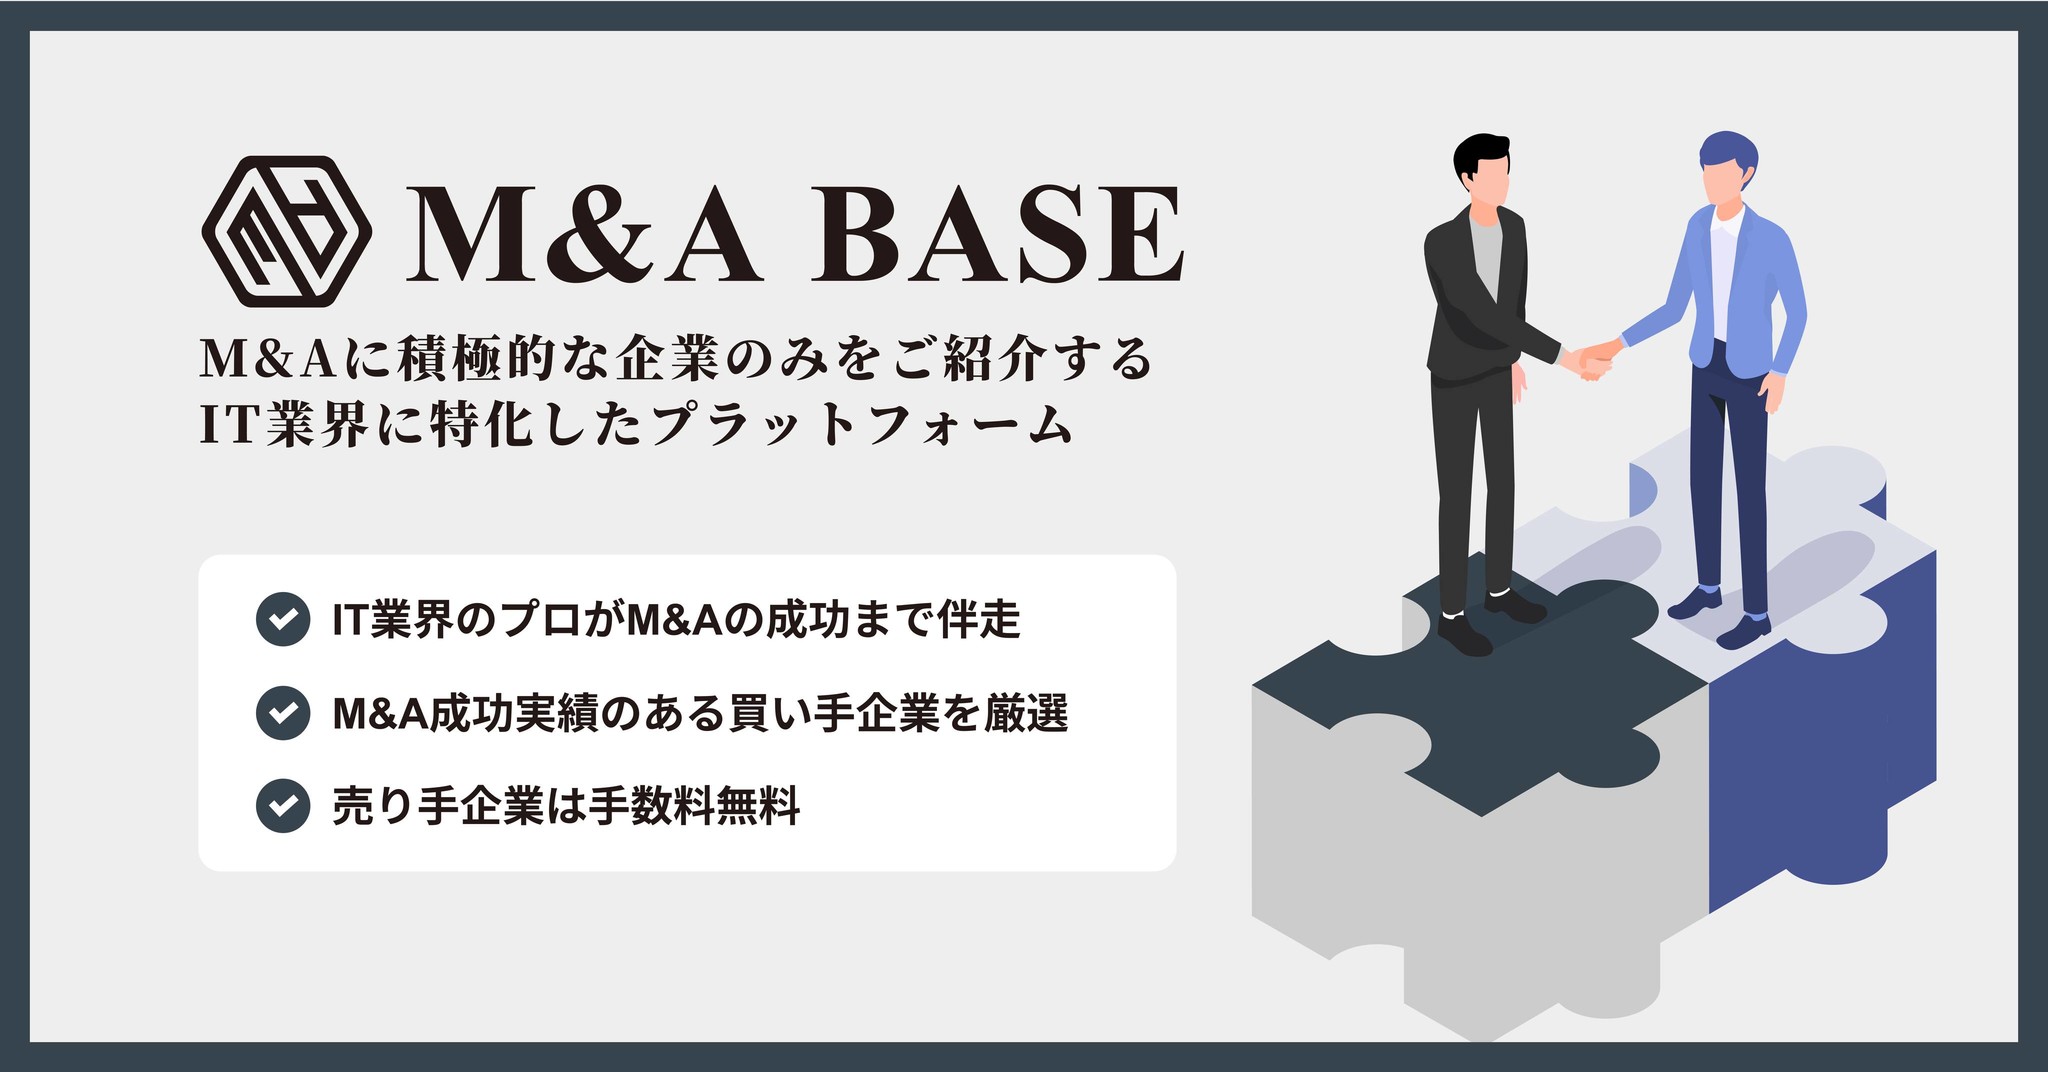 M&A BASE、さらなる成長を目指す売り手企業と厳選された買い手企業を繋ぐ「M&Aプラットフォーム」の提供を開始